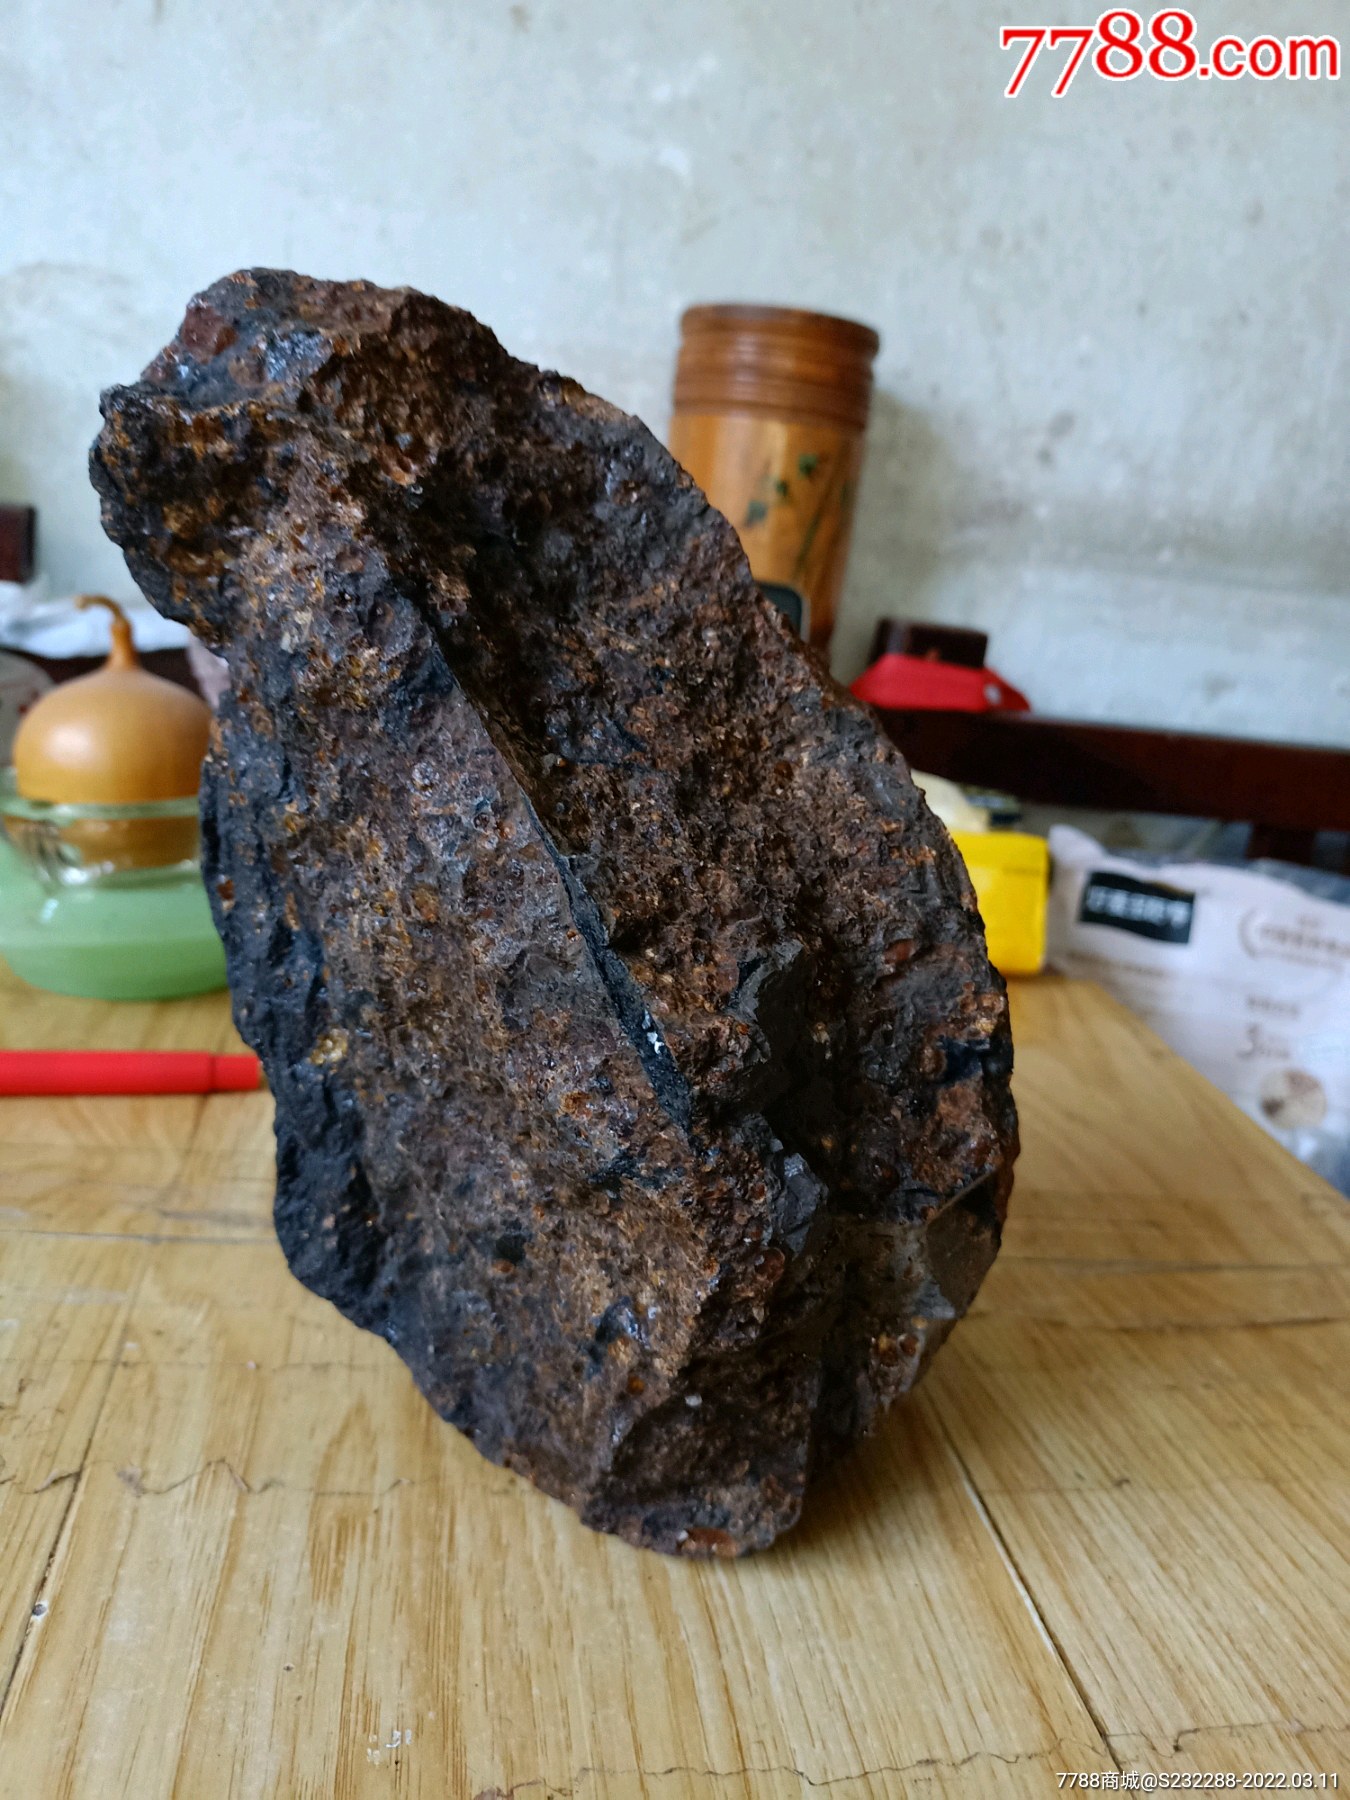 煤琥珀原石图片及价格图片